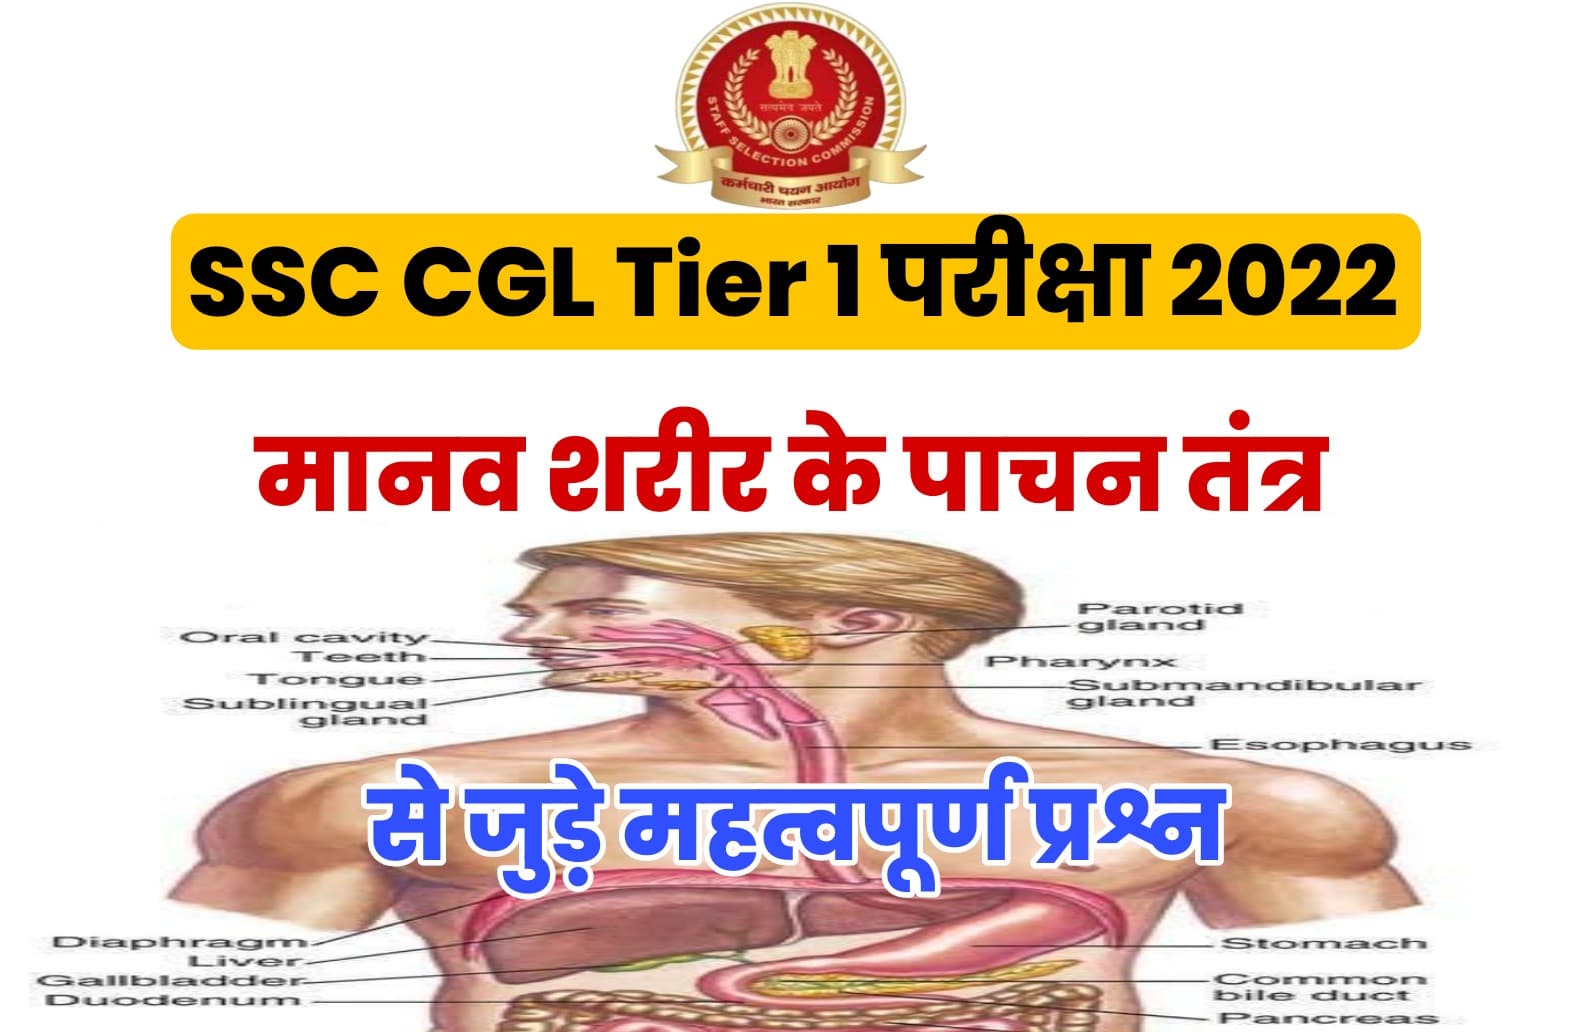 SSC CGL Tier I Exam 2022 | मानव शरीर के पाचन तंत्र से जुड़ें कुछ बेहद महत्वपूर्ण प्रश्न जो परीक्षा में पूछे जा सकते हैं